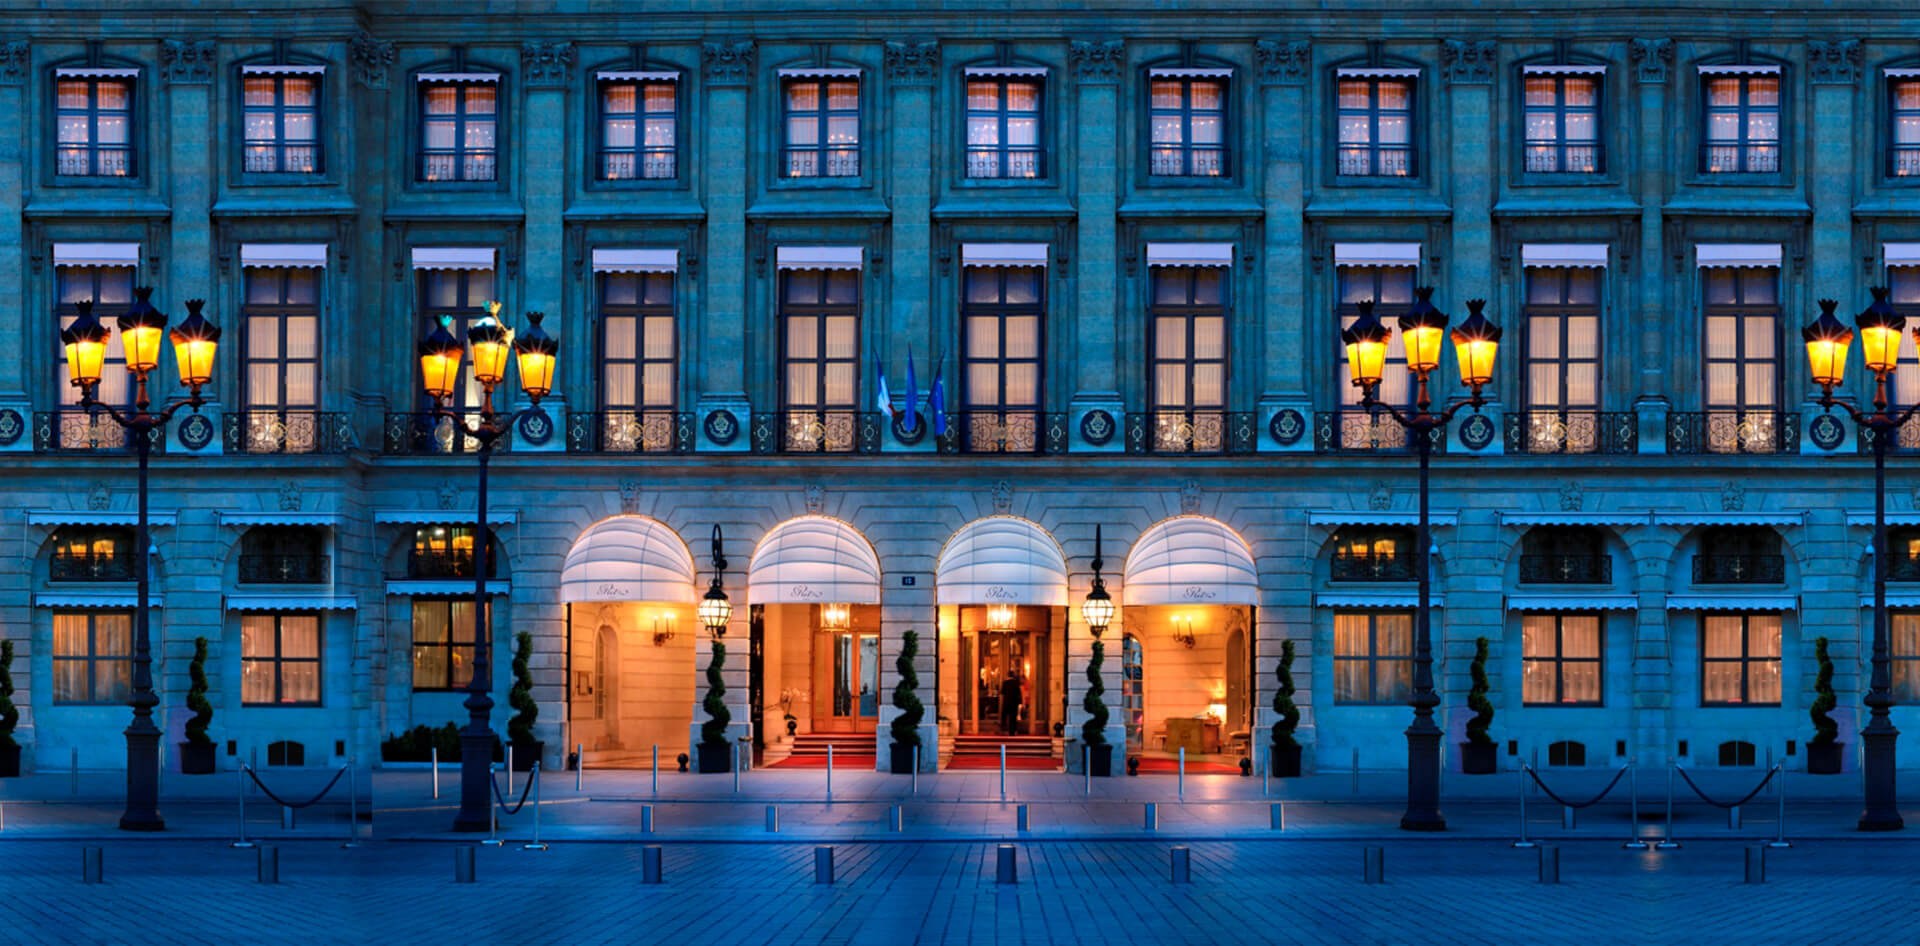 Ritz hotel on Place Vendôme in Paris